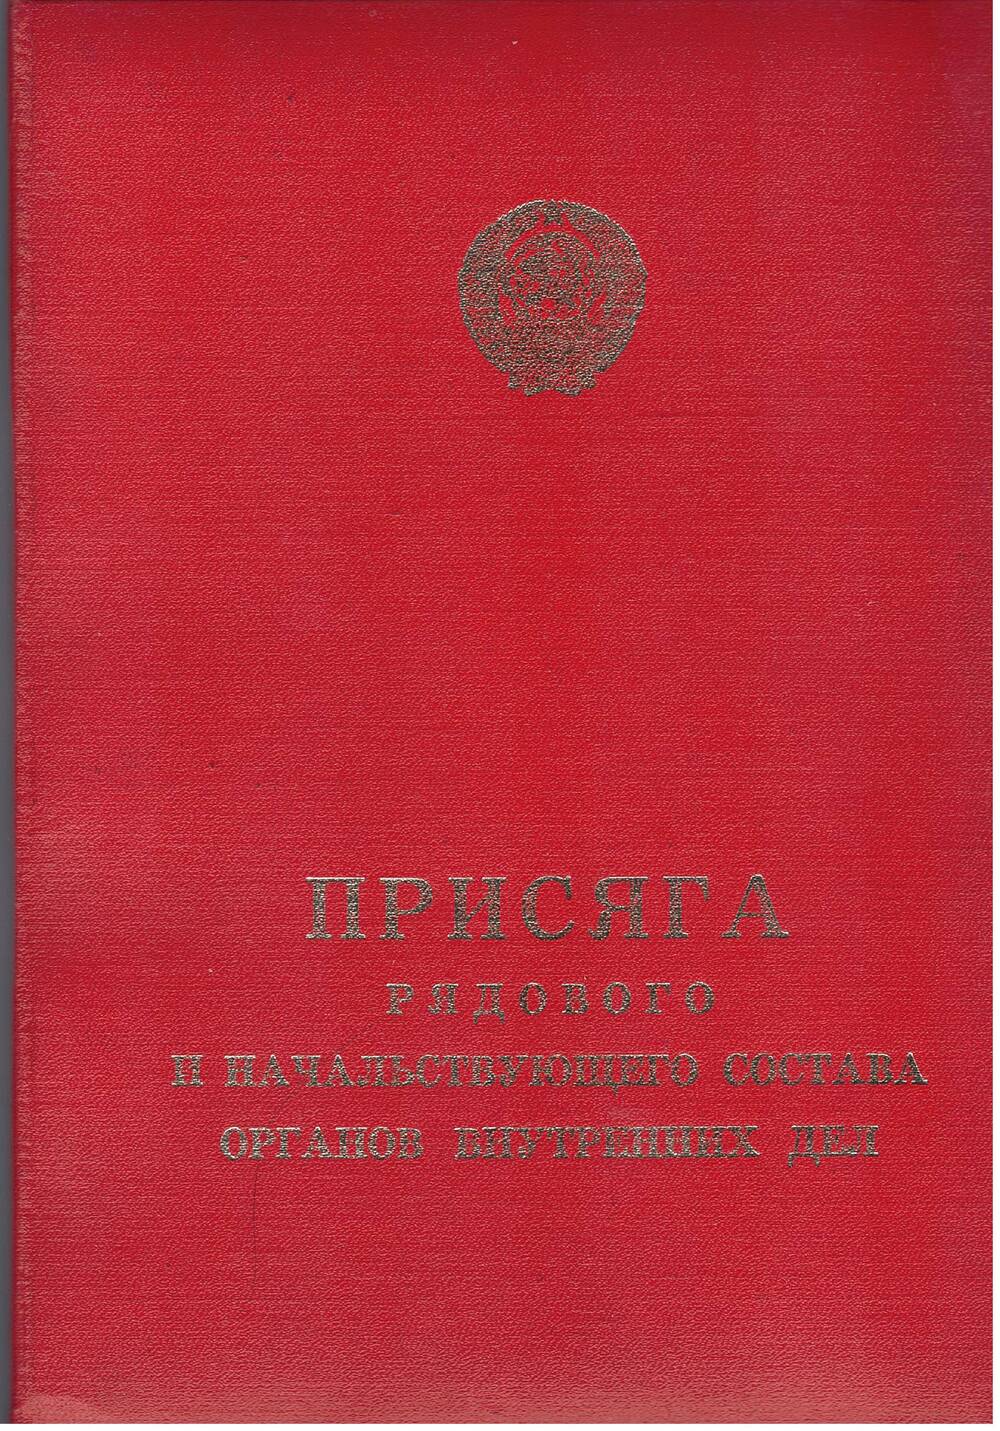 Присяга рядового и начальствующего состава органов внутренних дел. 1973 год.